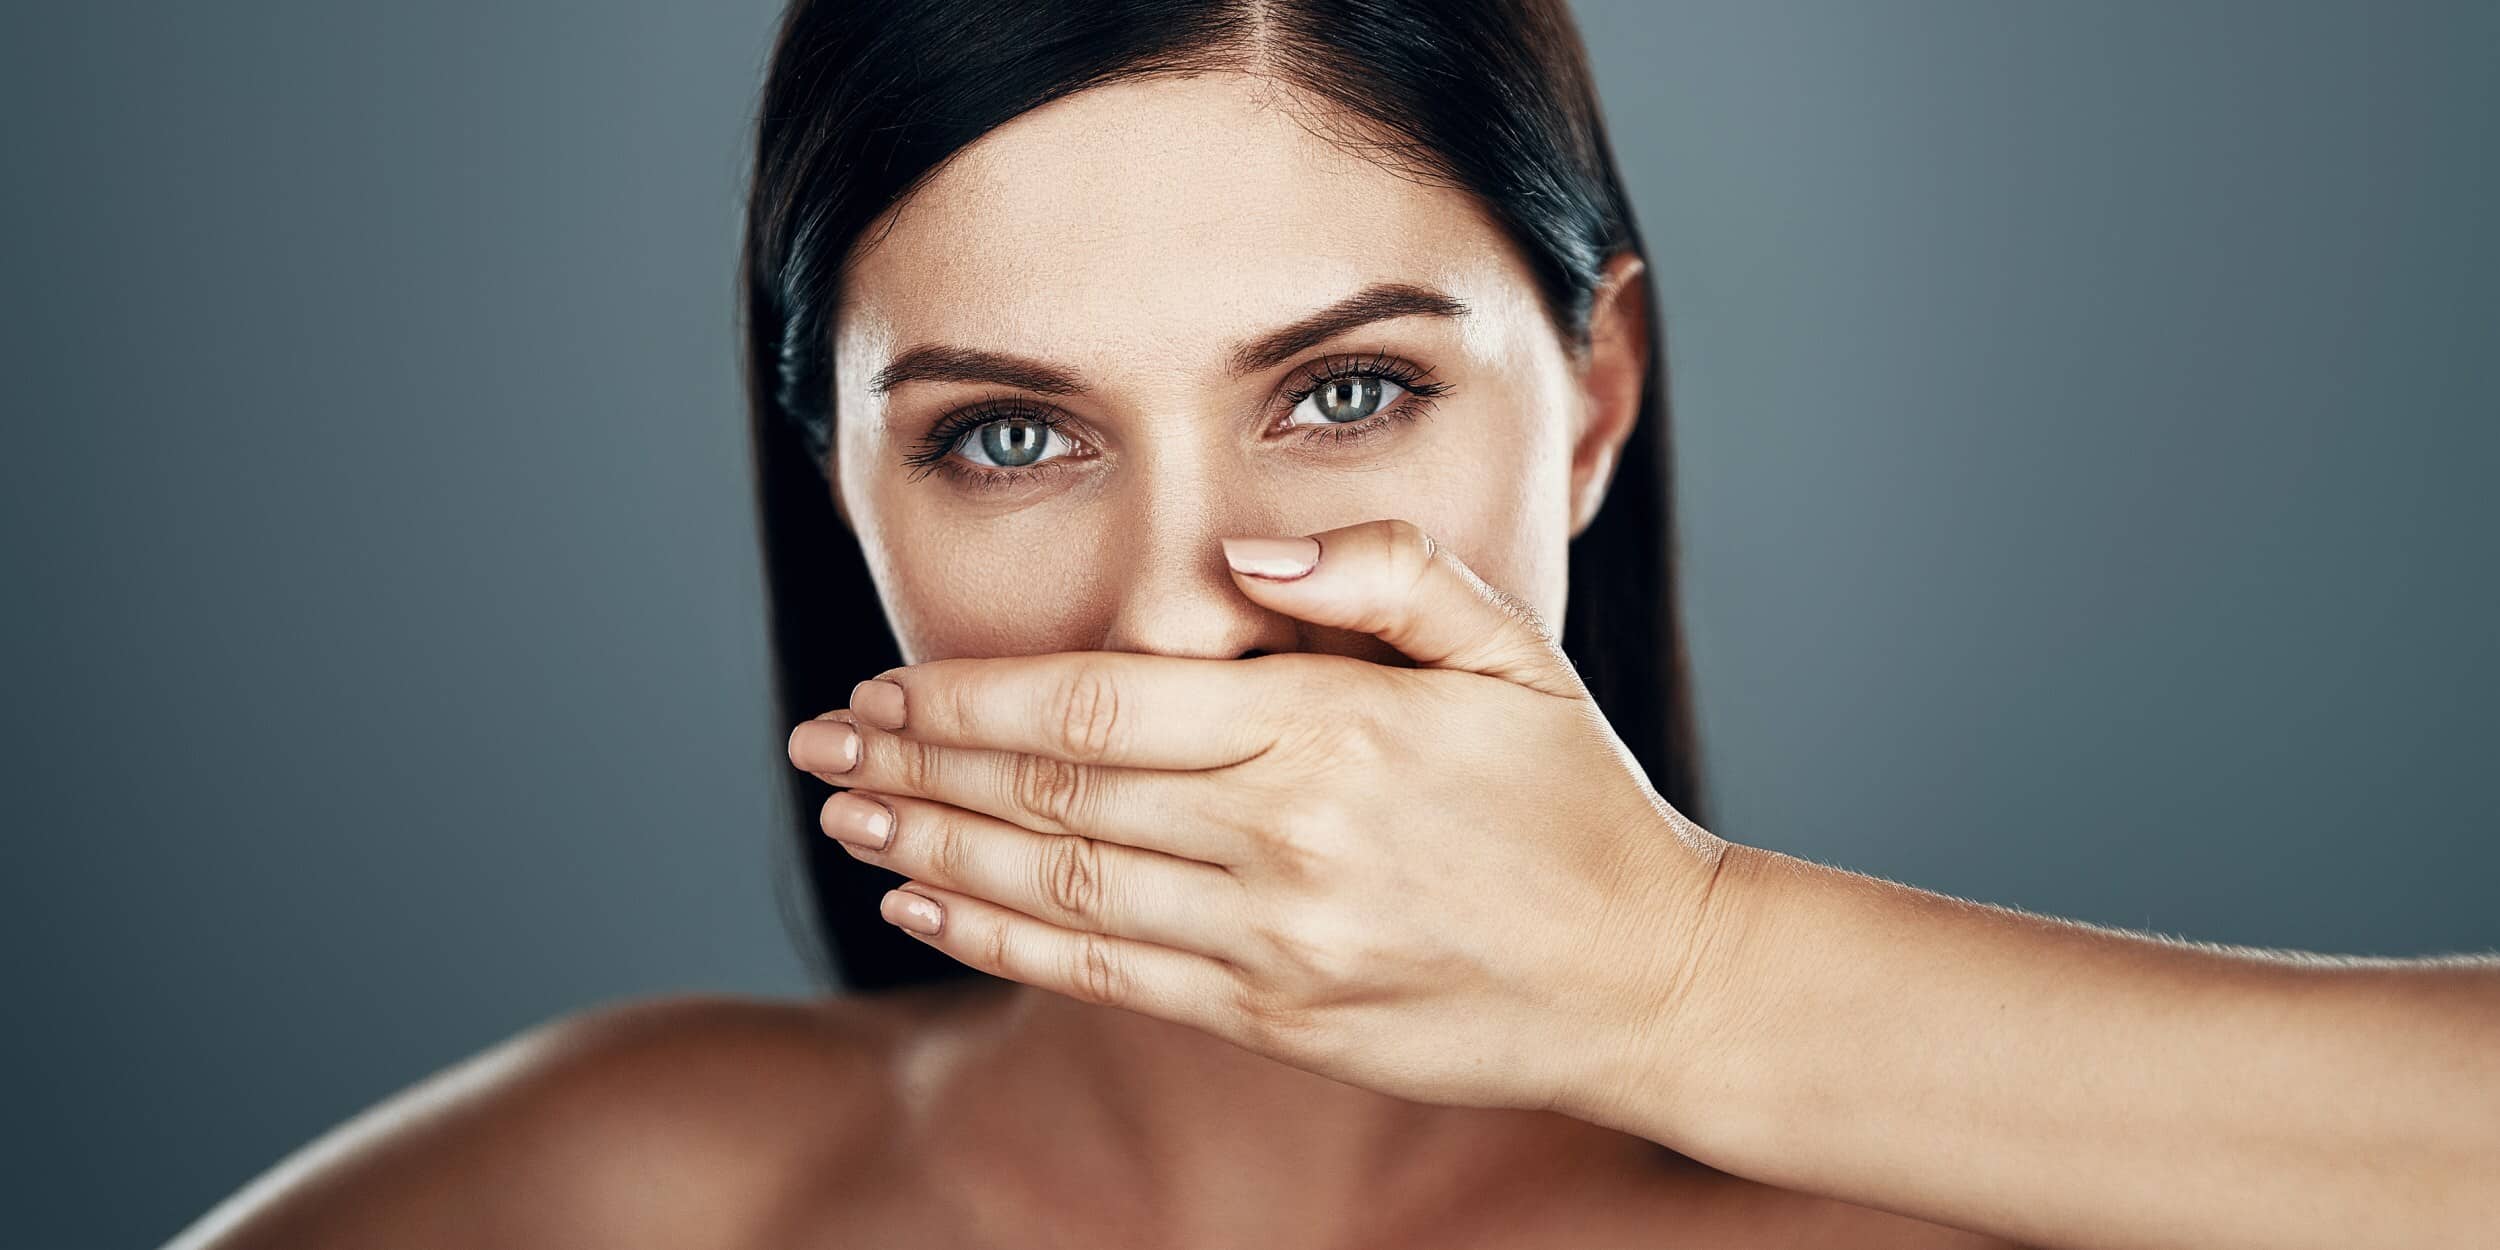 Quelles sont les causes de la mauvaise haleine ?